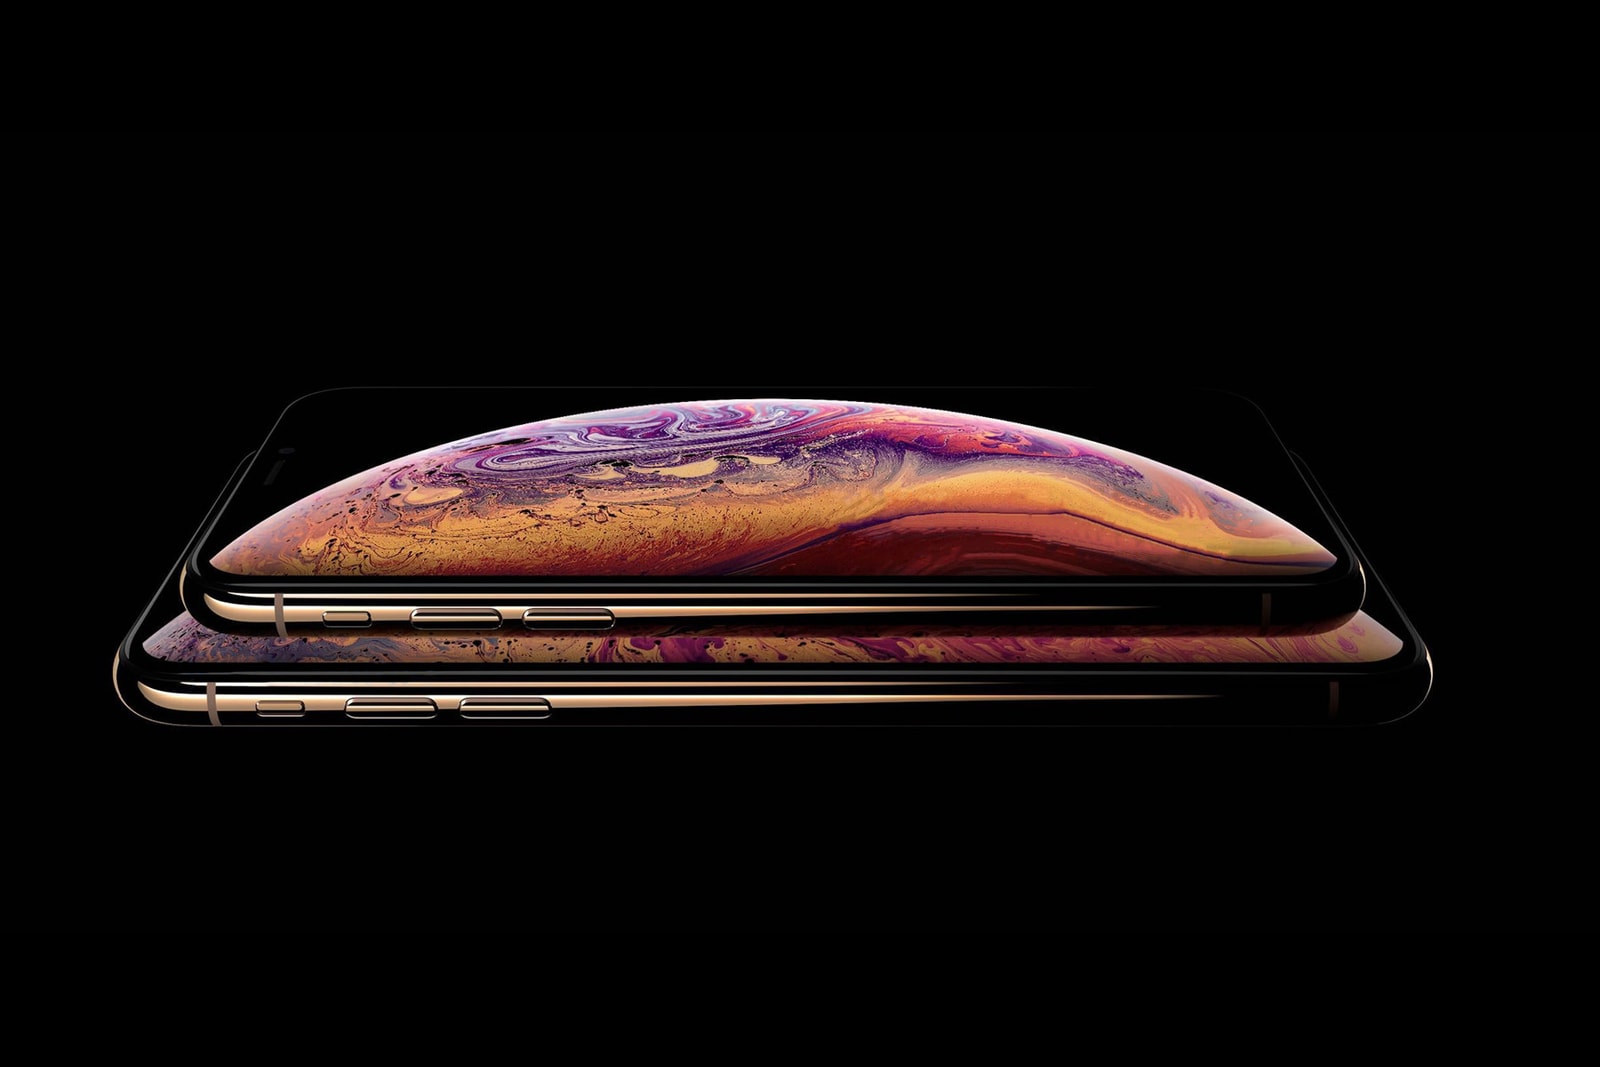 今夜発表が噂される新型 iPhone 計3機種をザックリ総括 HYPEBEAST ハイプビースト アップル アイフォン